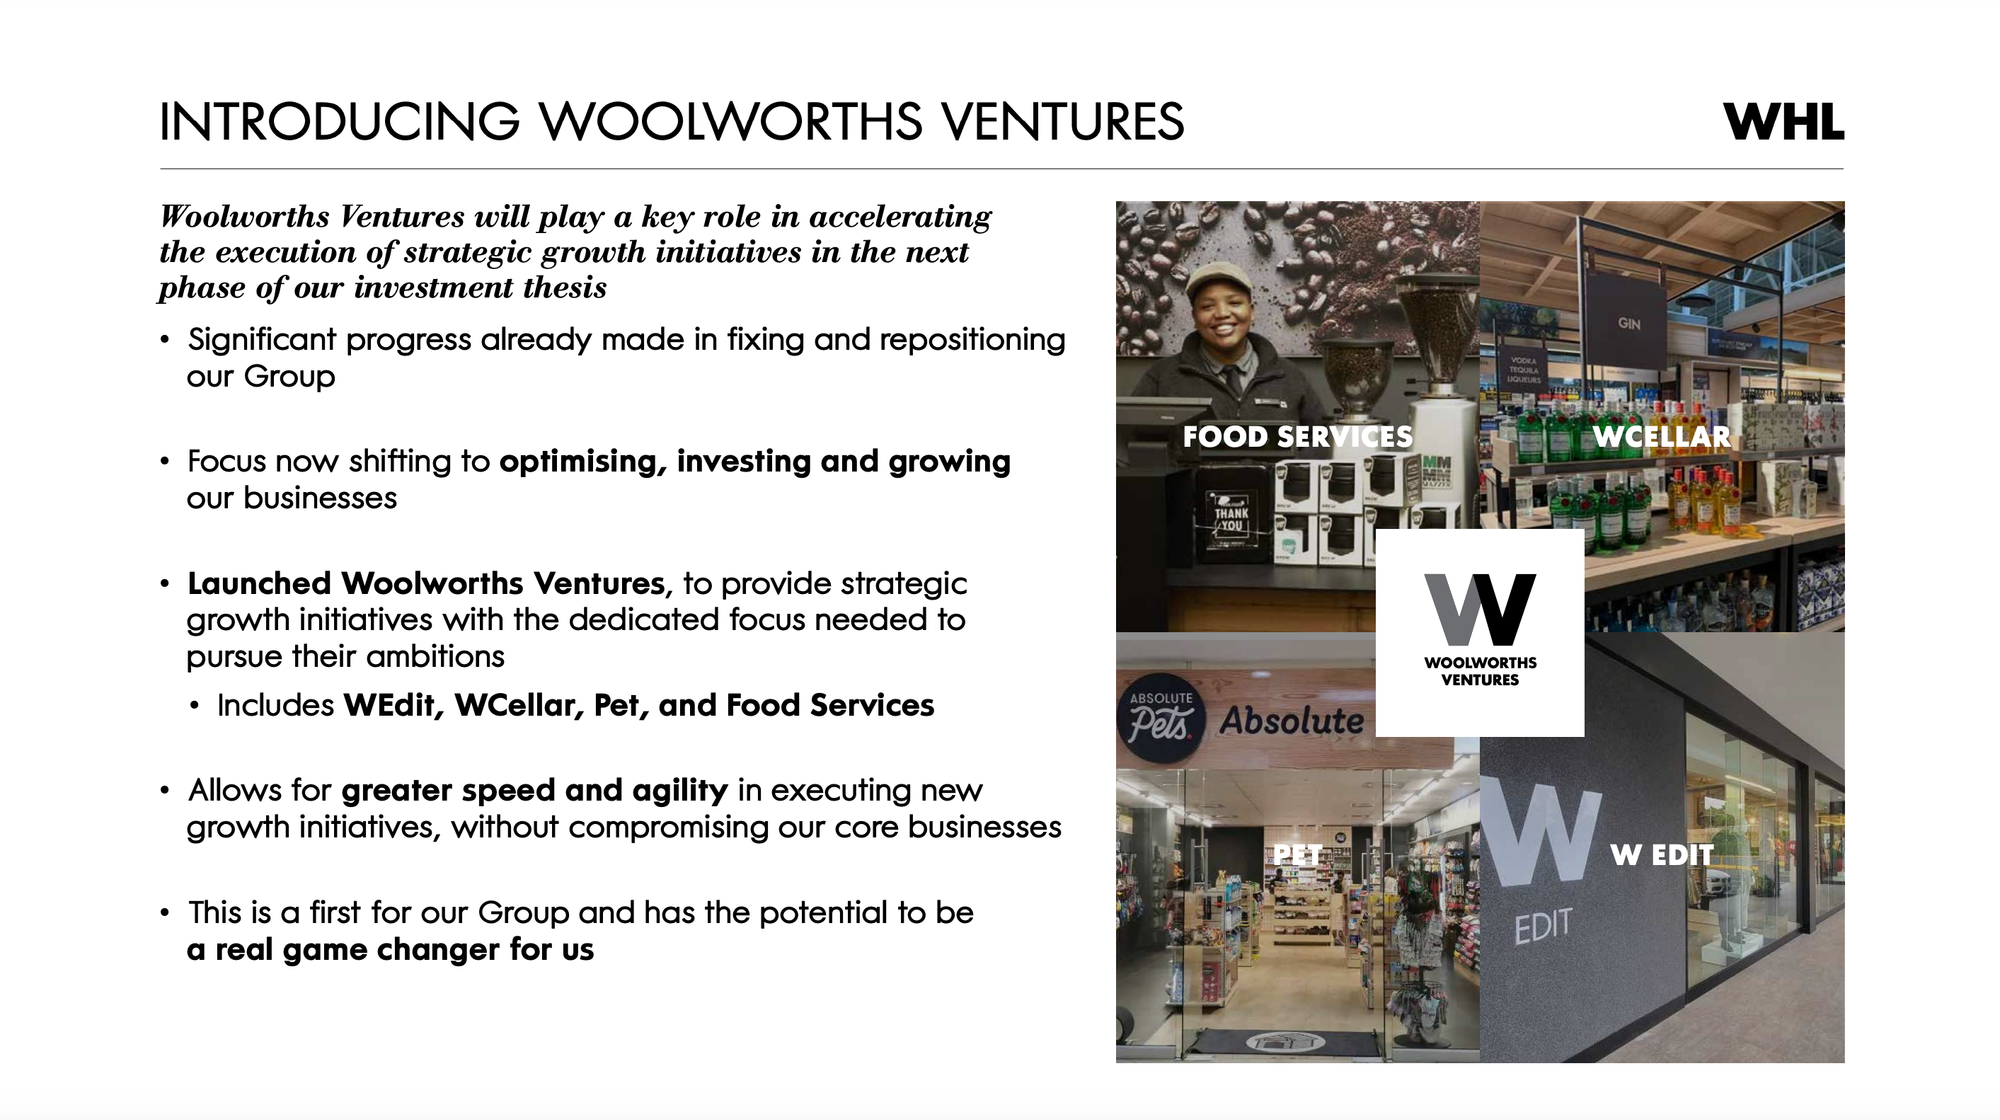 Woolworths Ventures